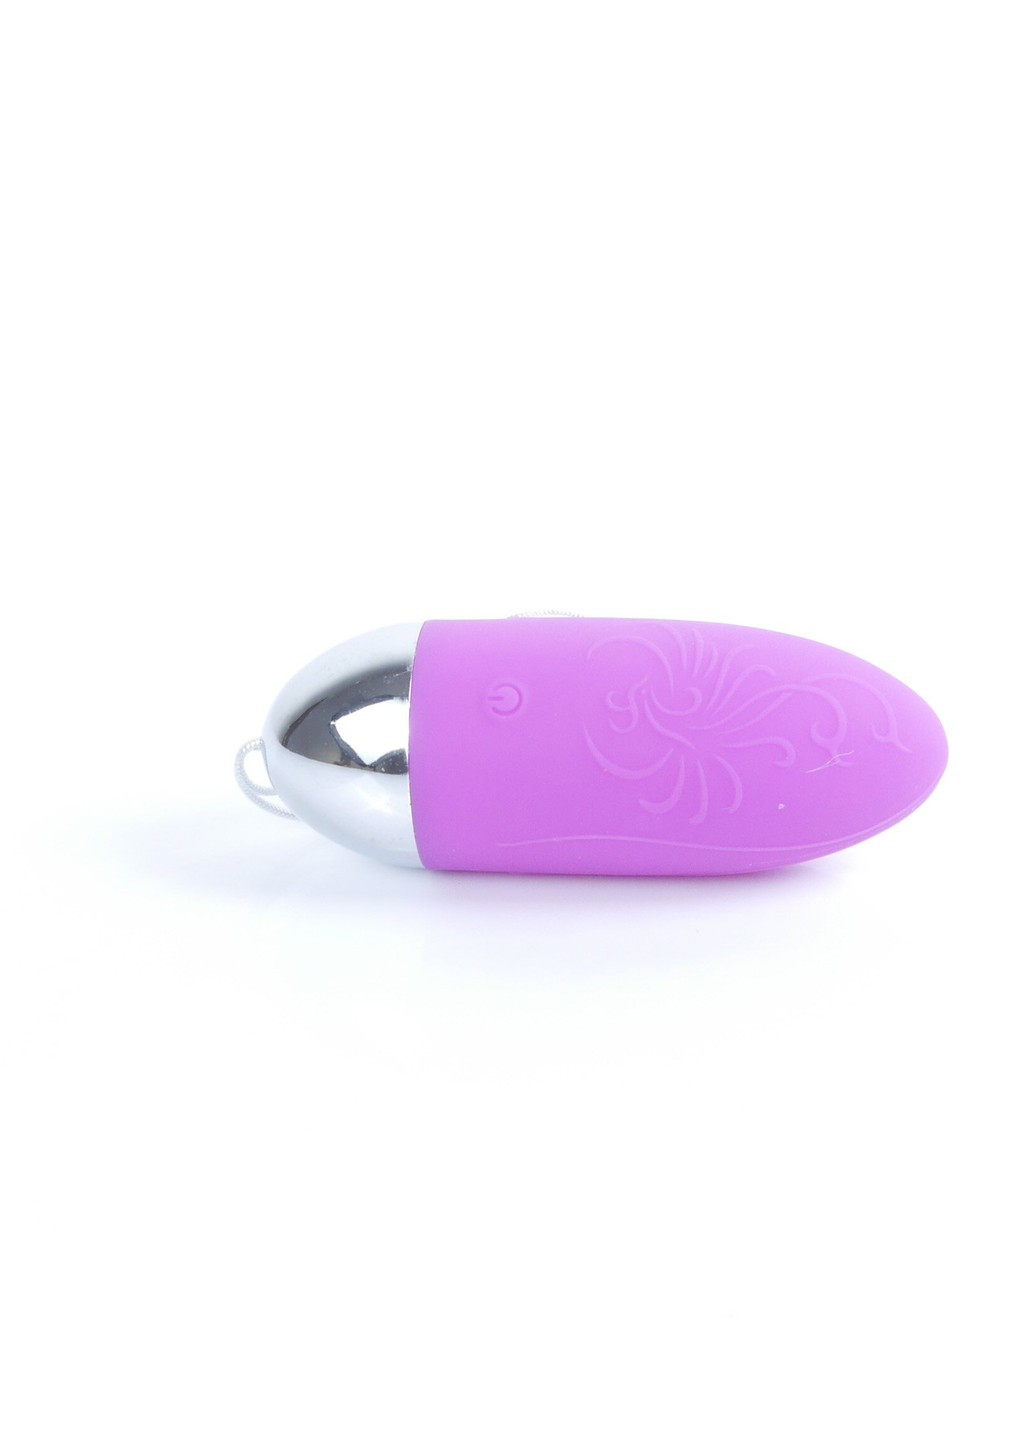 Виброяйцо с пультом ДУ - Remoted controller egg 0.3 USB Purple, BS2600109 Langsha (268464403)